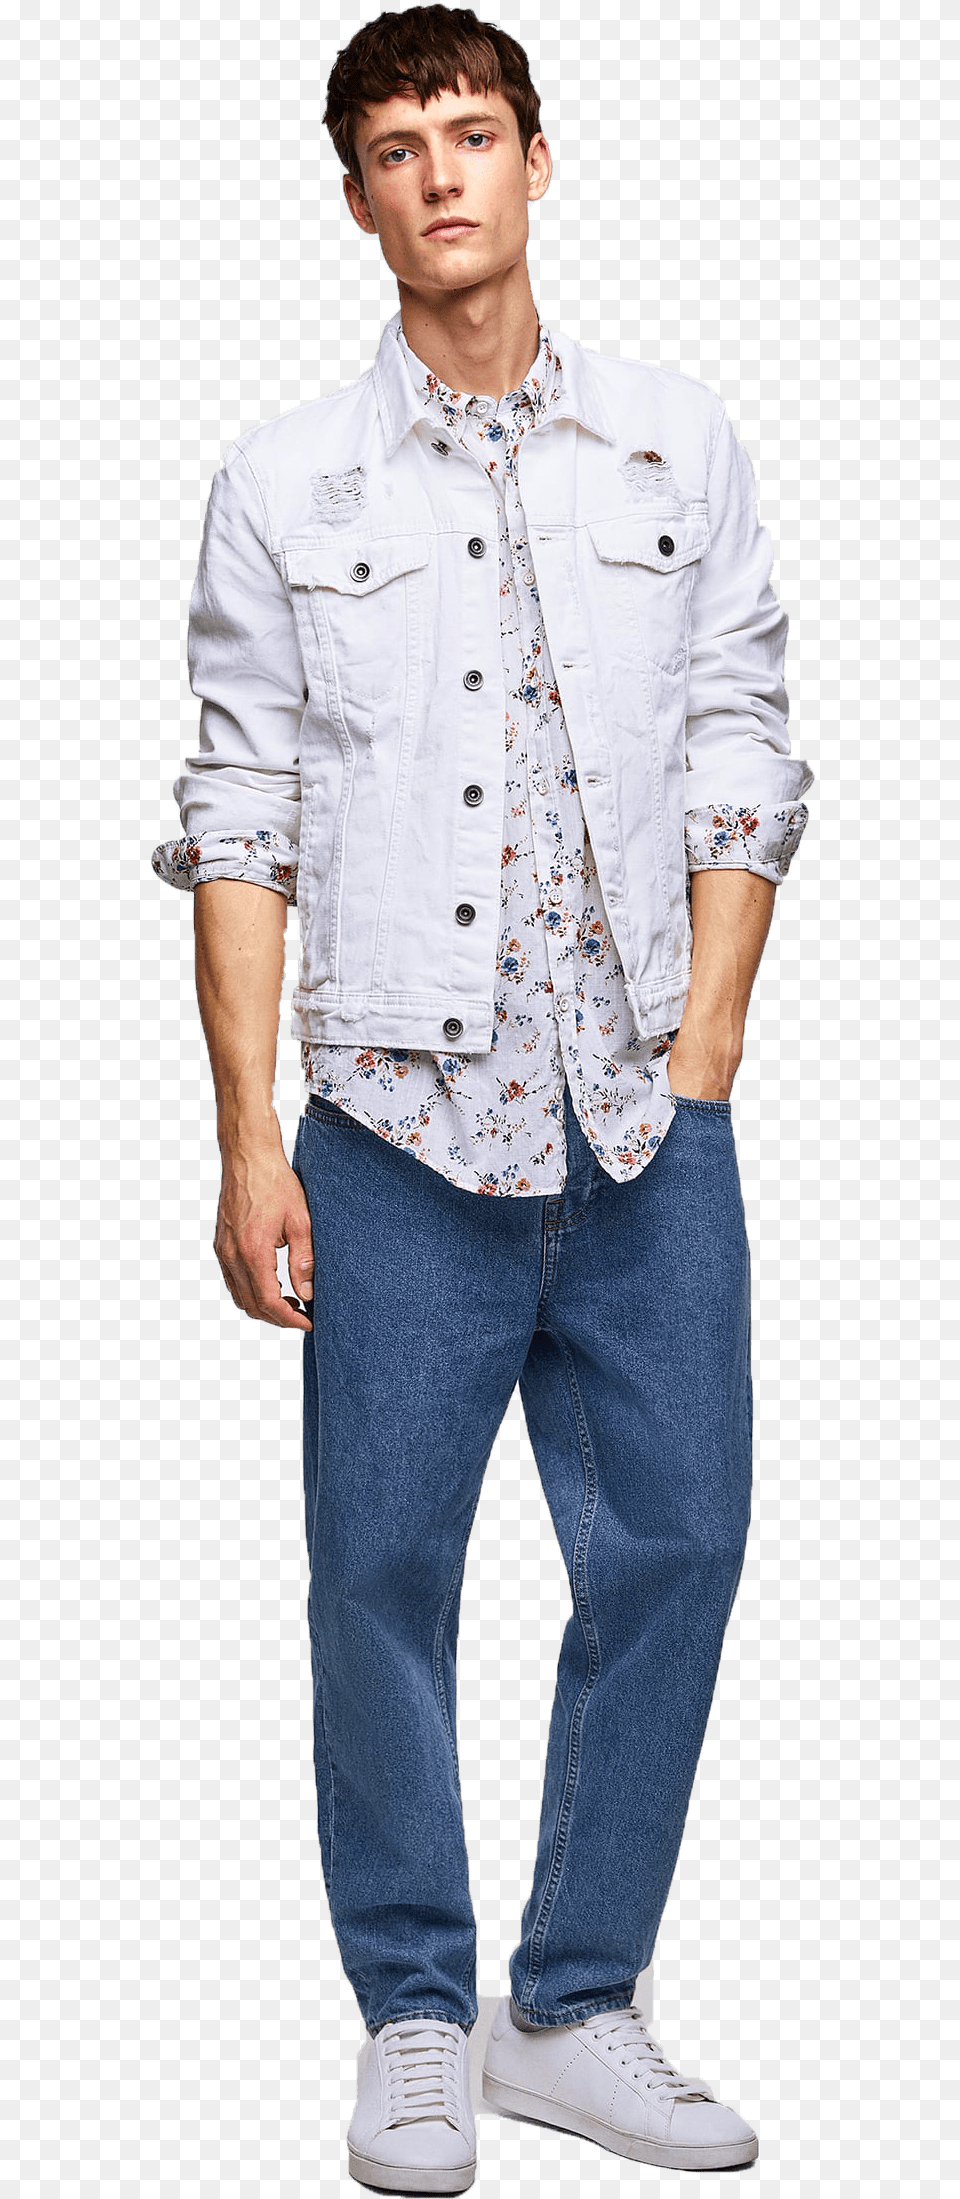 Jeans Shirt Model, Vest, Clothing, Pants, Person Png